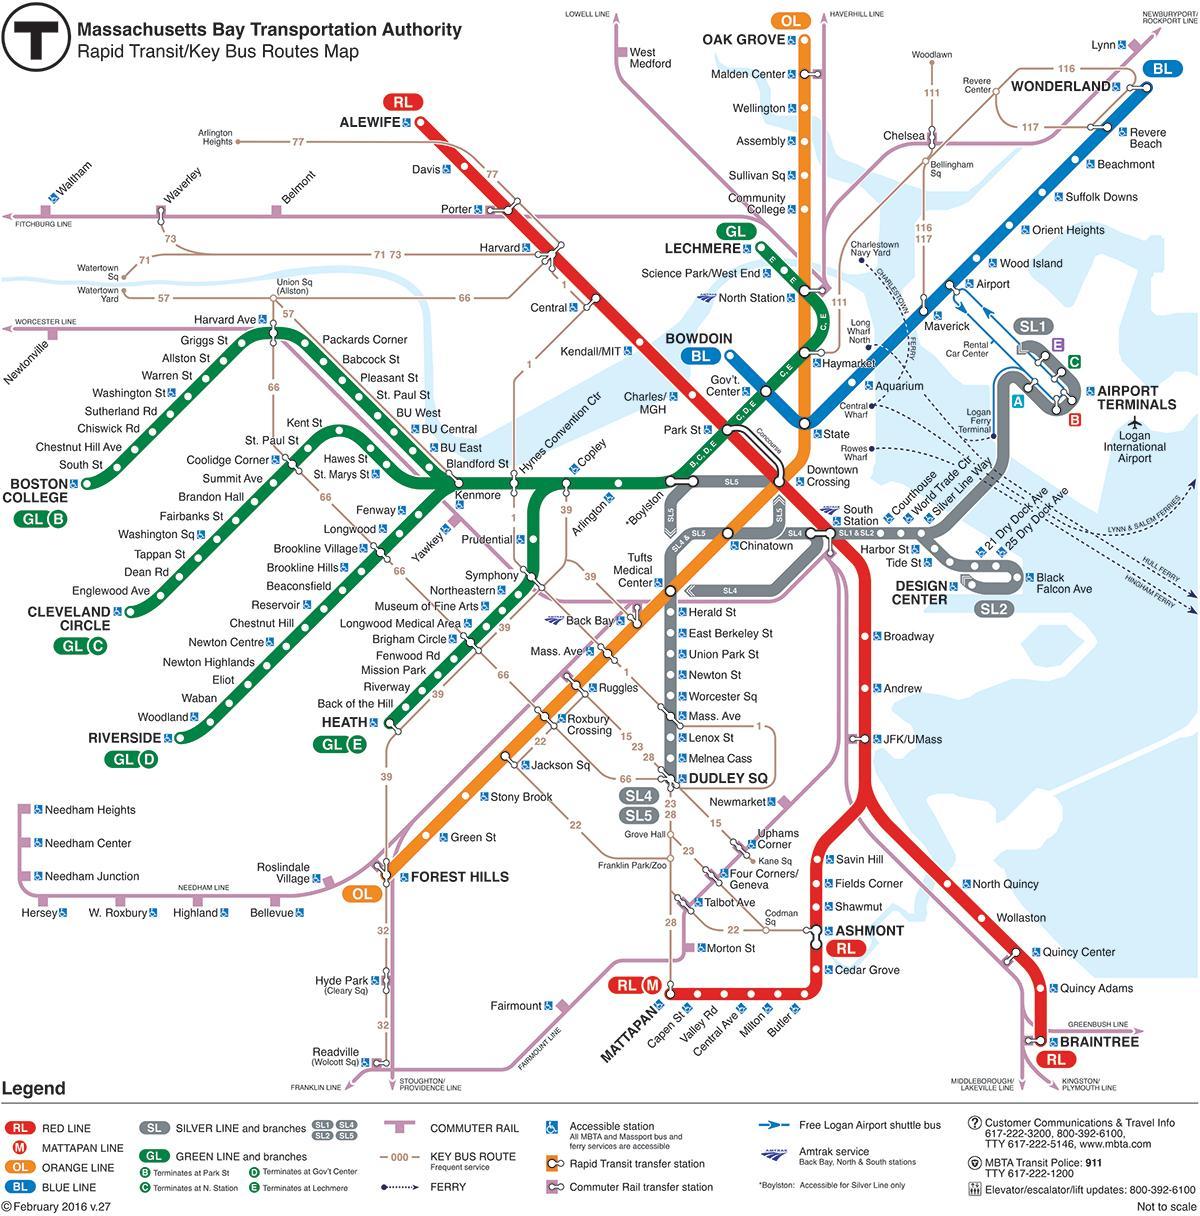 બોસ્ટન મેટ્રો વિસ્તાર નકશો